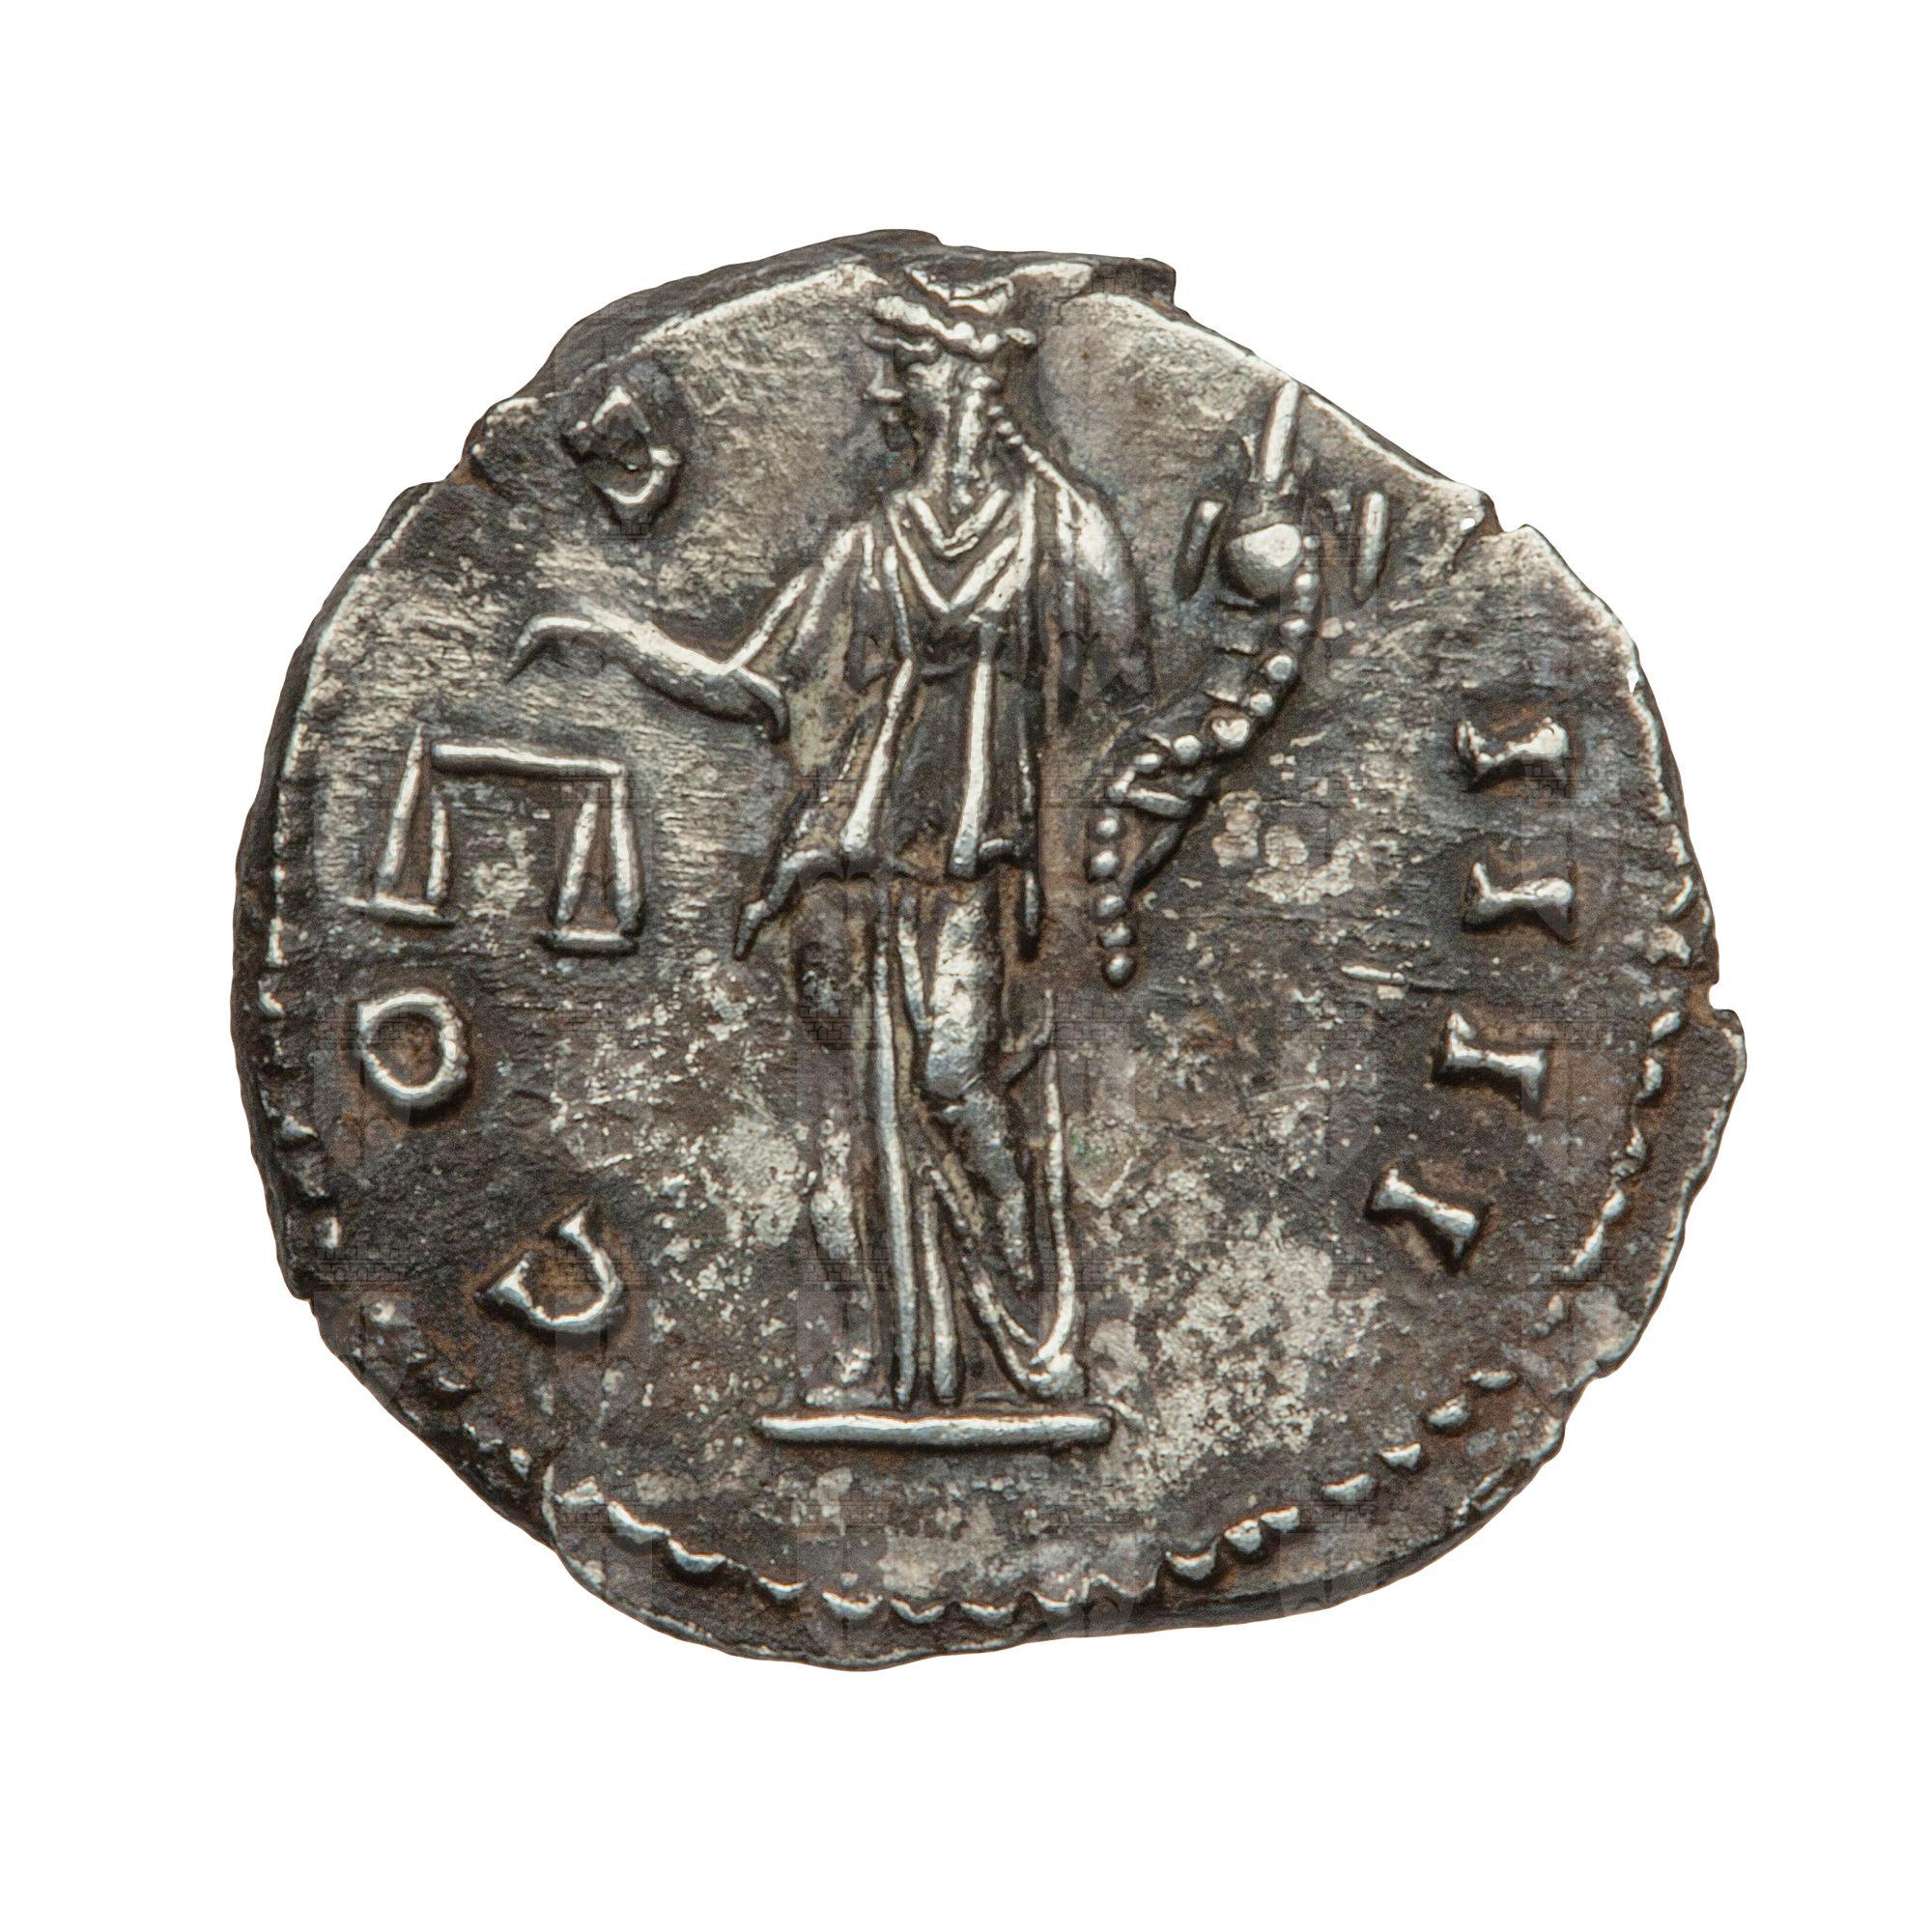 https://catalogomusei.comune.trieste.it/samira/resource/image/reperti-archeologici/Roma 688 R Antonino Pio.jpg?token=65e6c33d3e90e